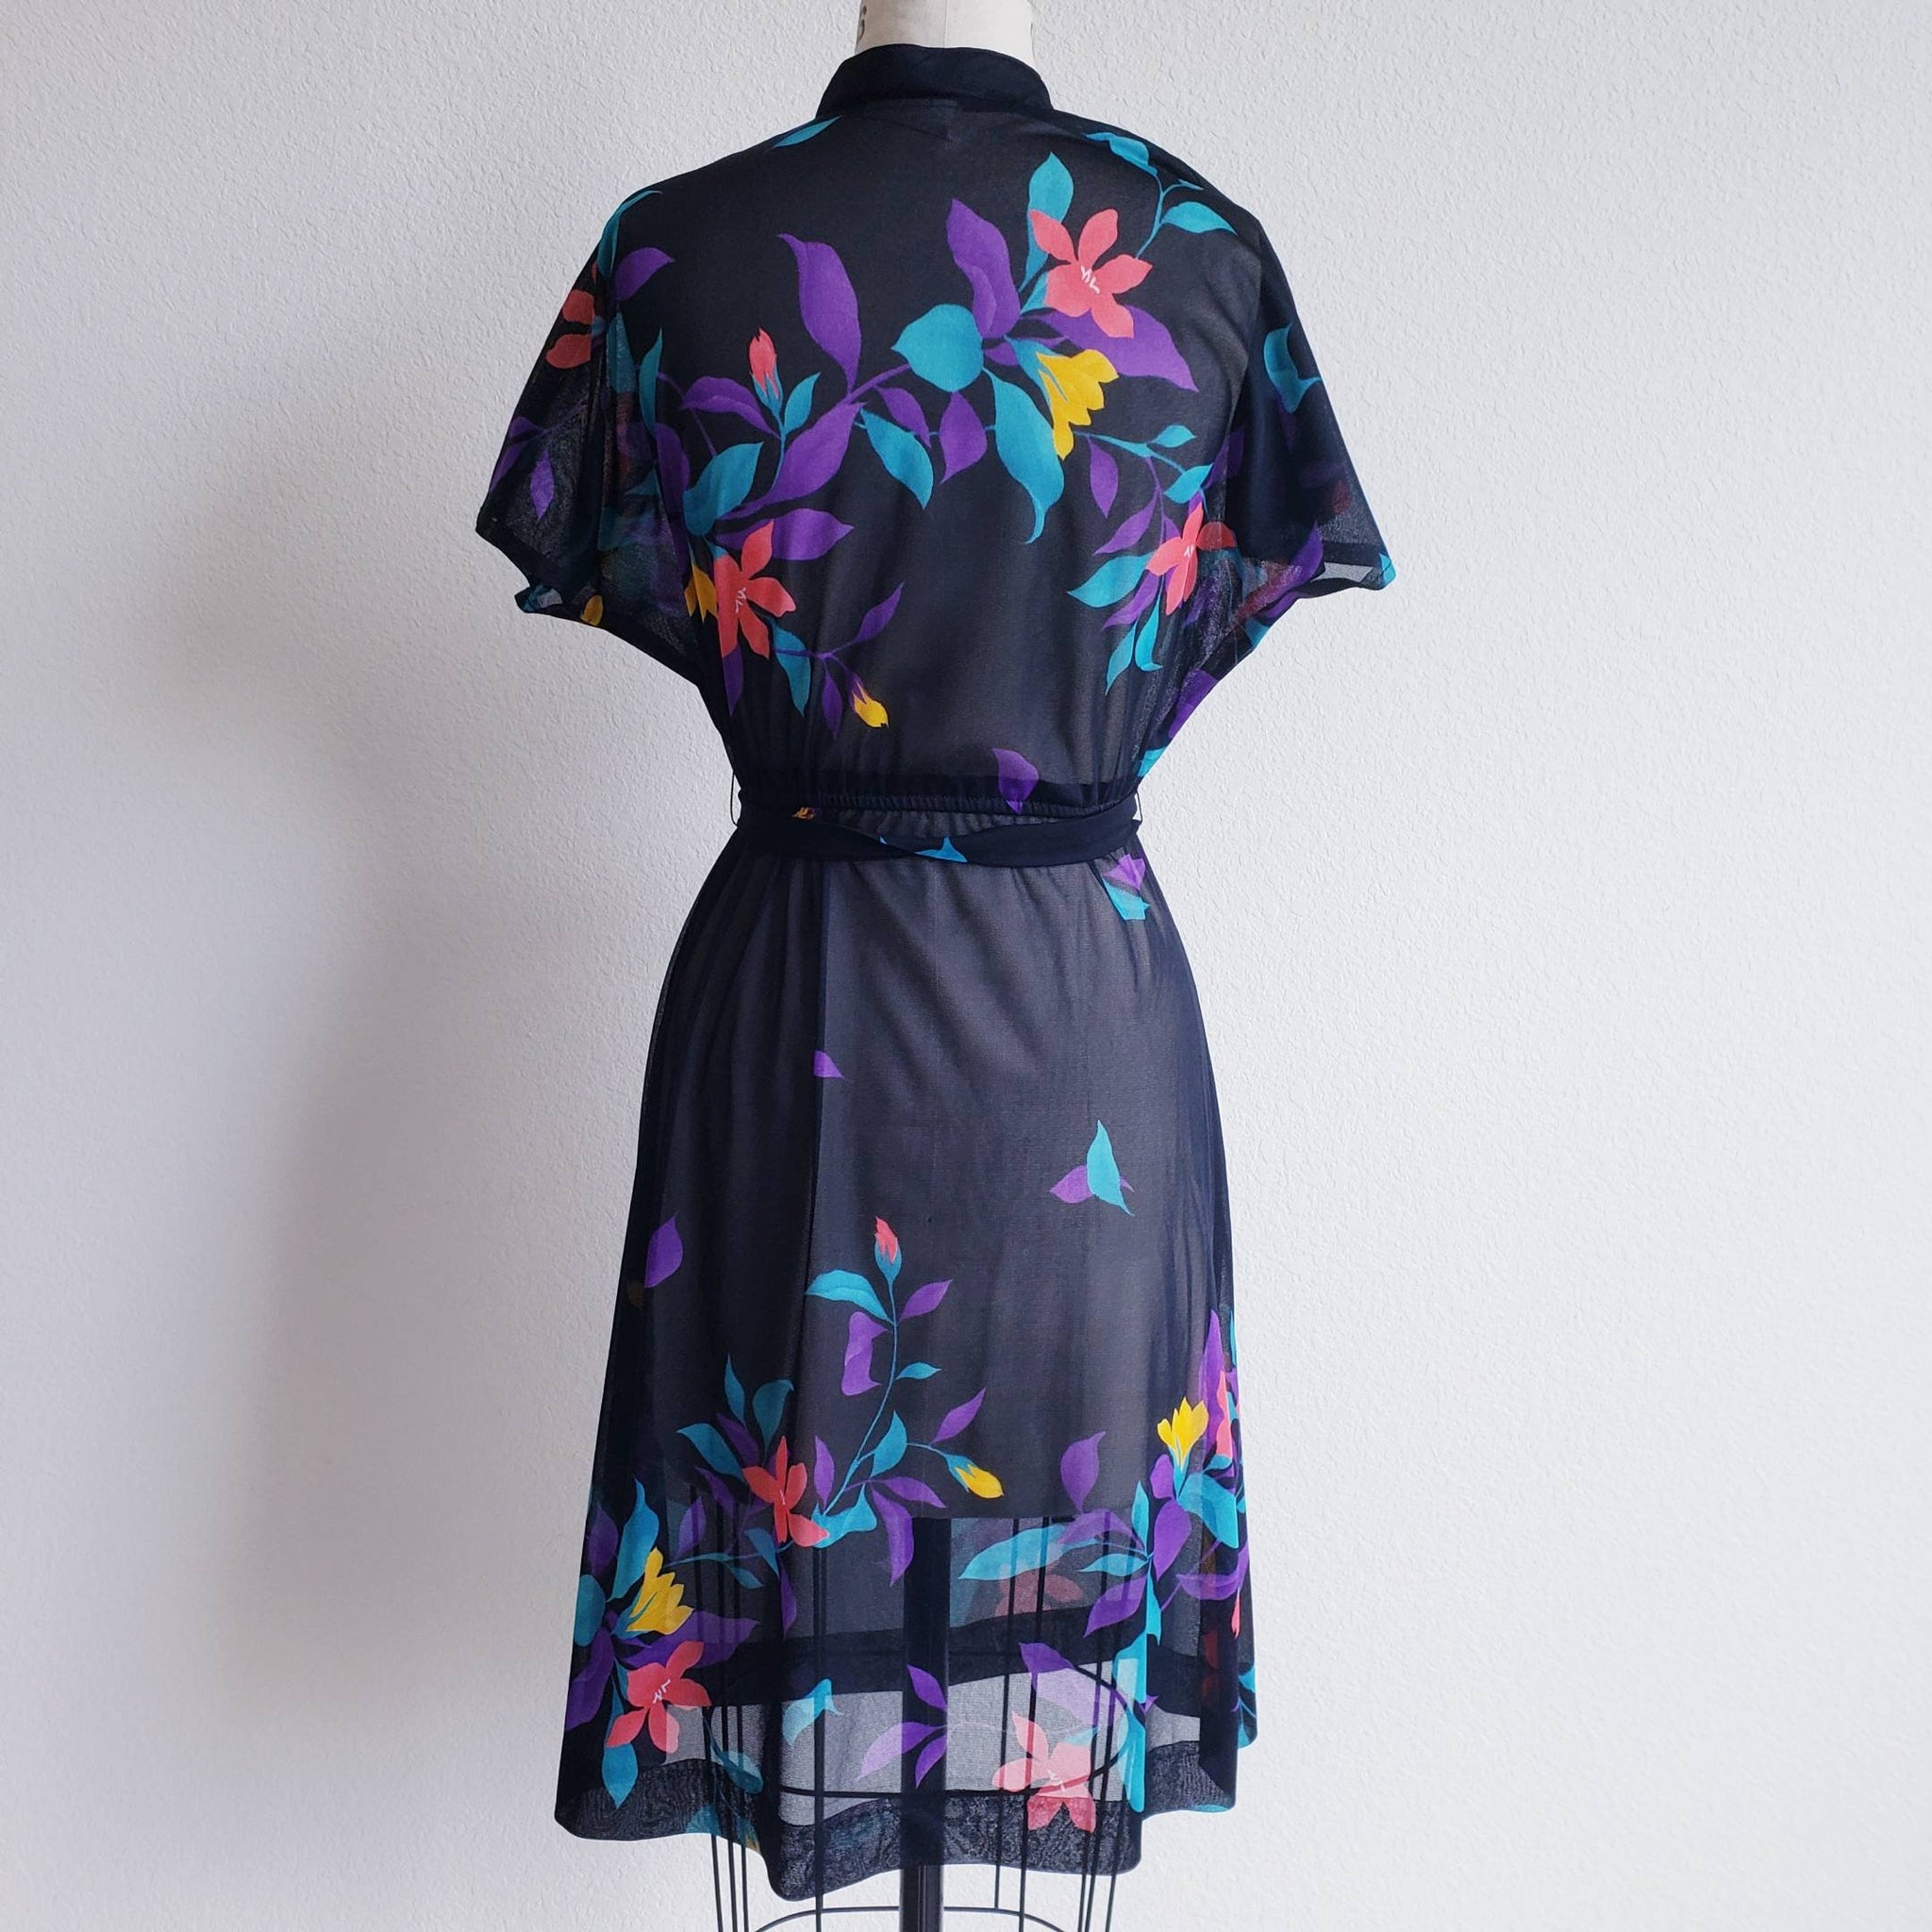 Vintage 80s Black Sheer Floral Dress - ChicCityVintage